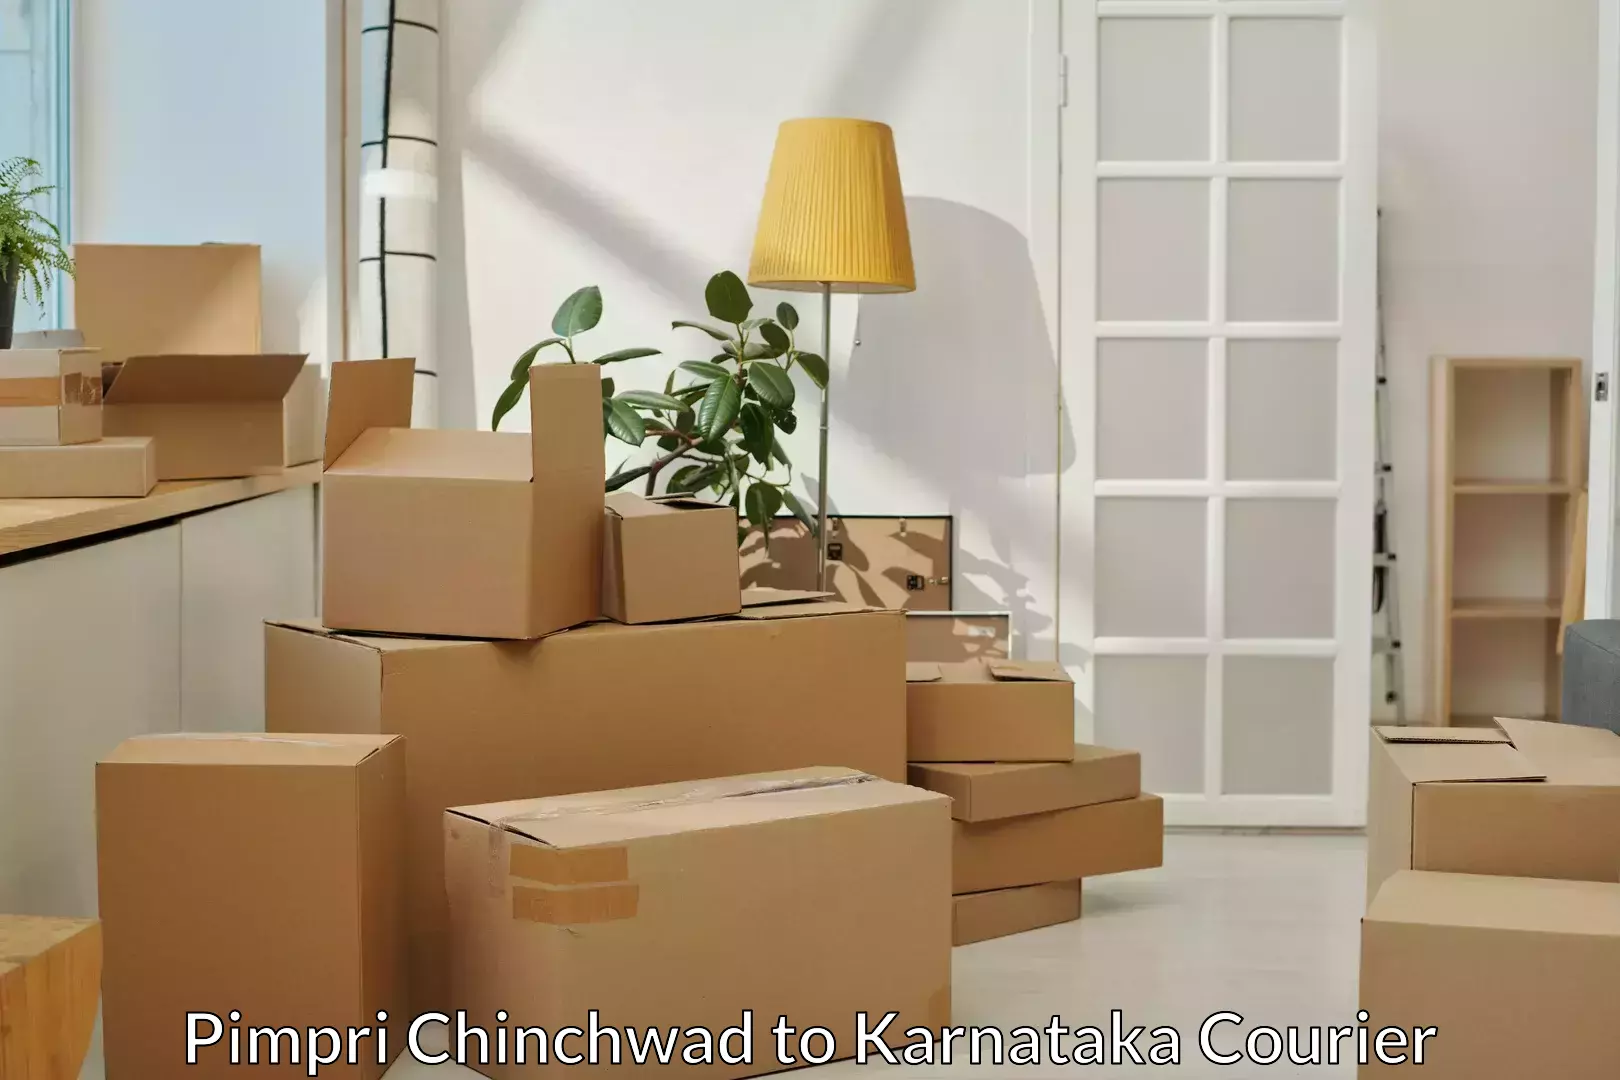 Furniture delivery service Pimpri Chinchwad to Dandeli